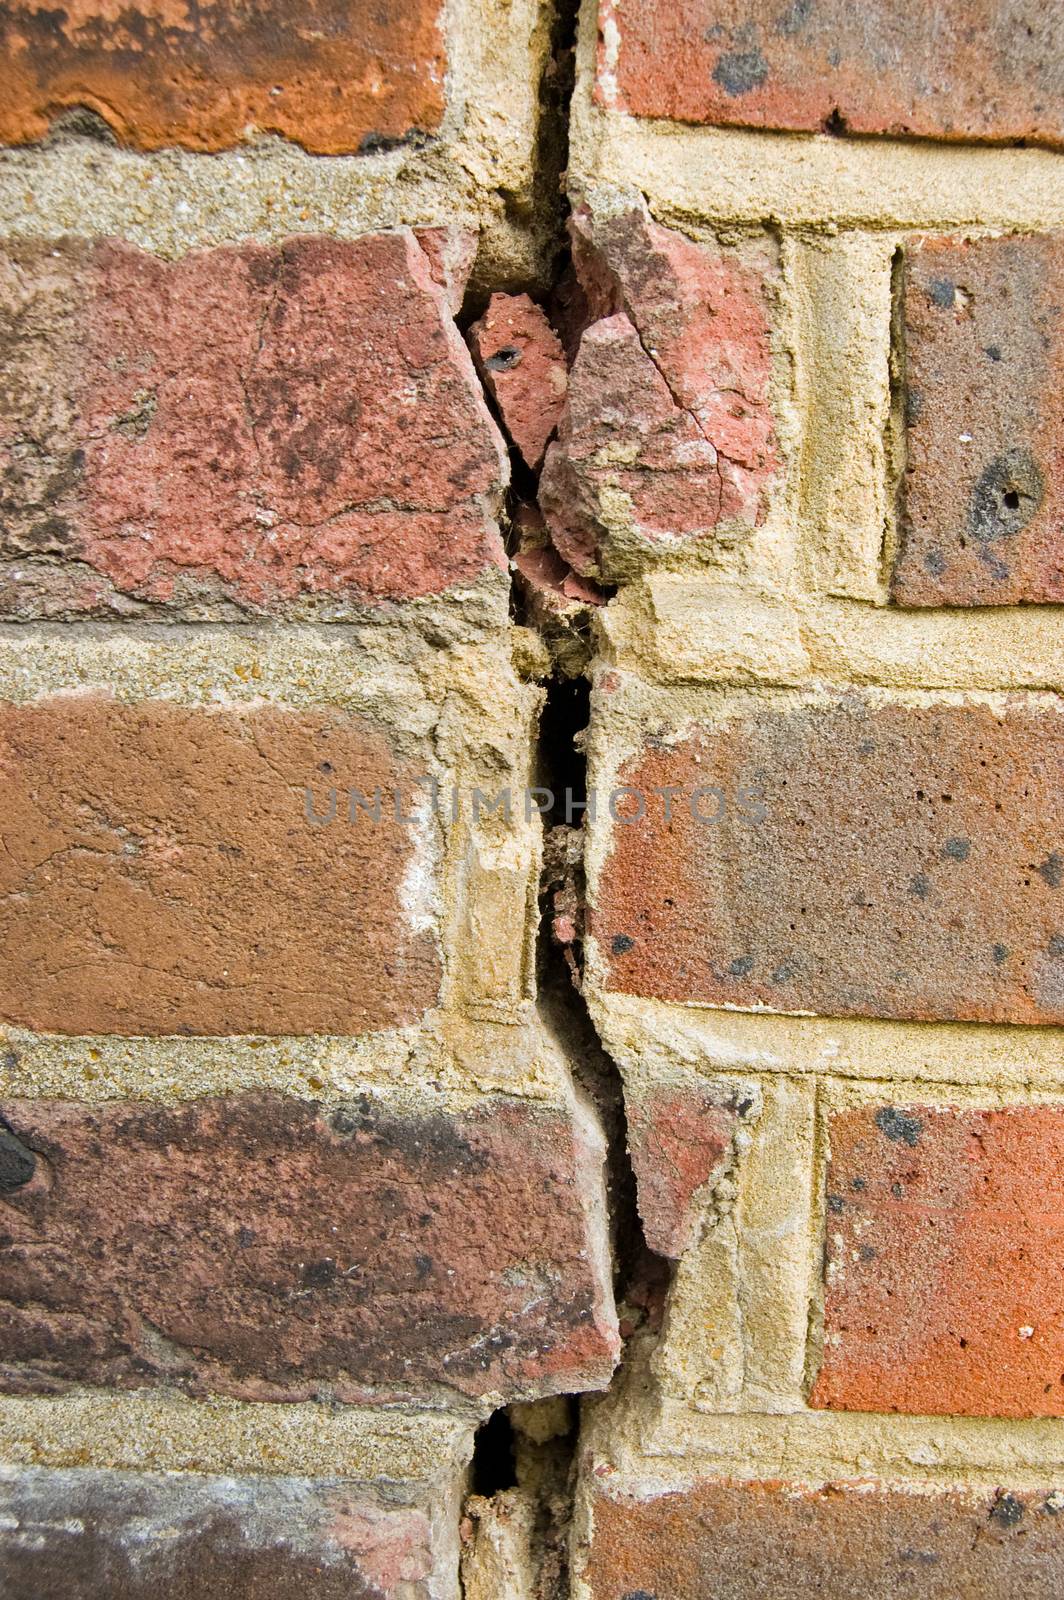 A vertical crack in a brick wall.